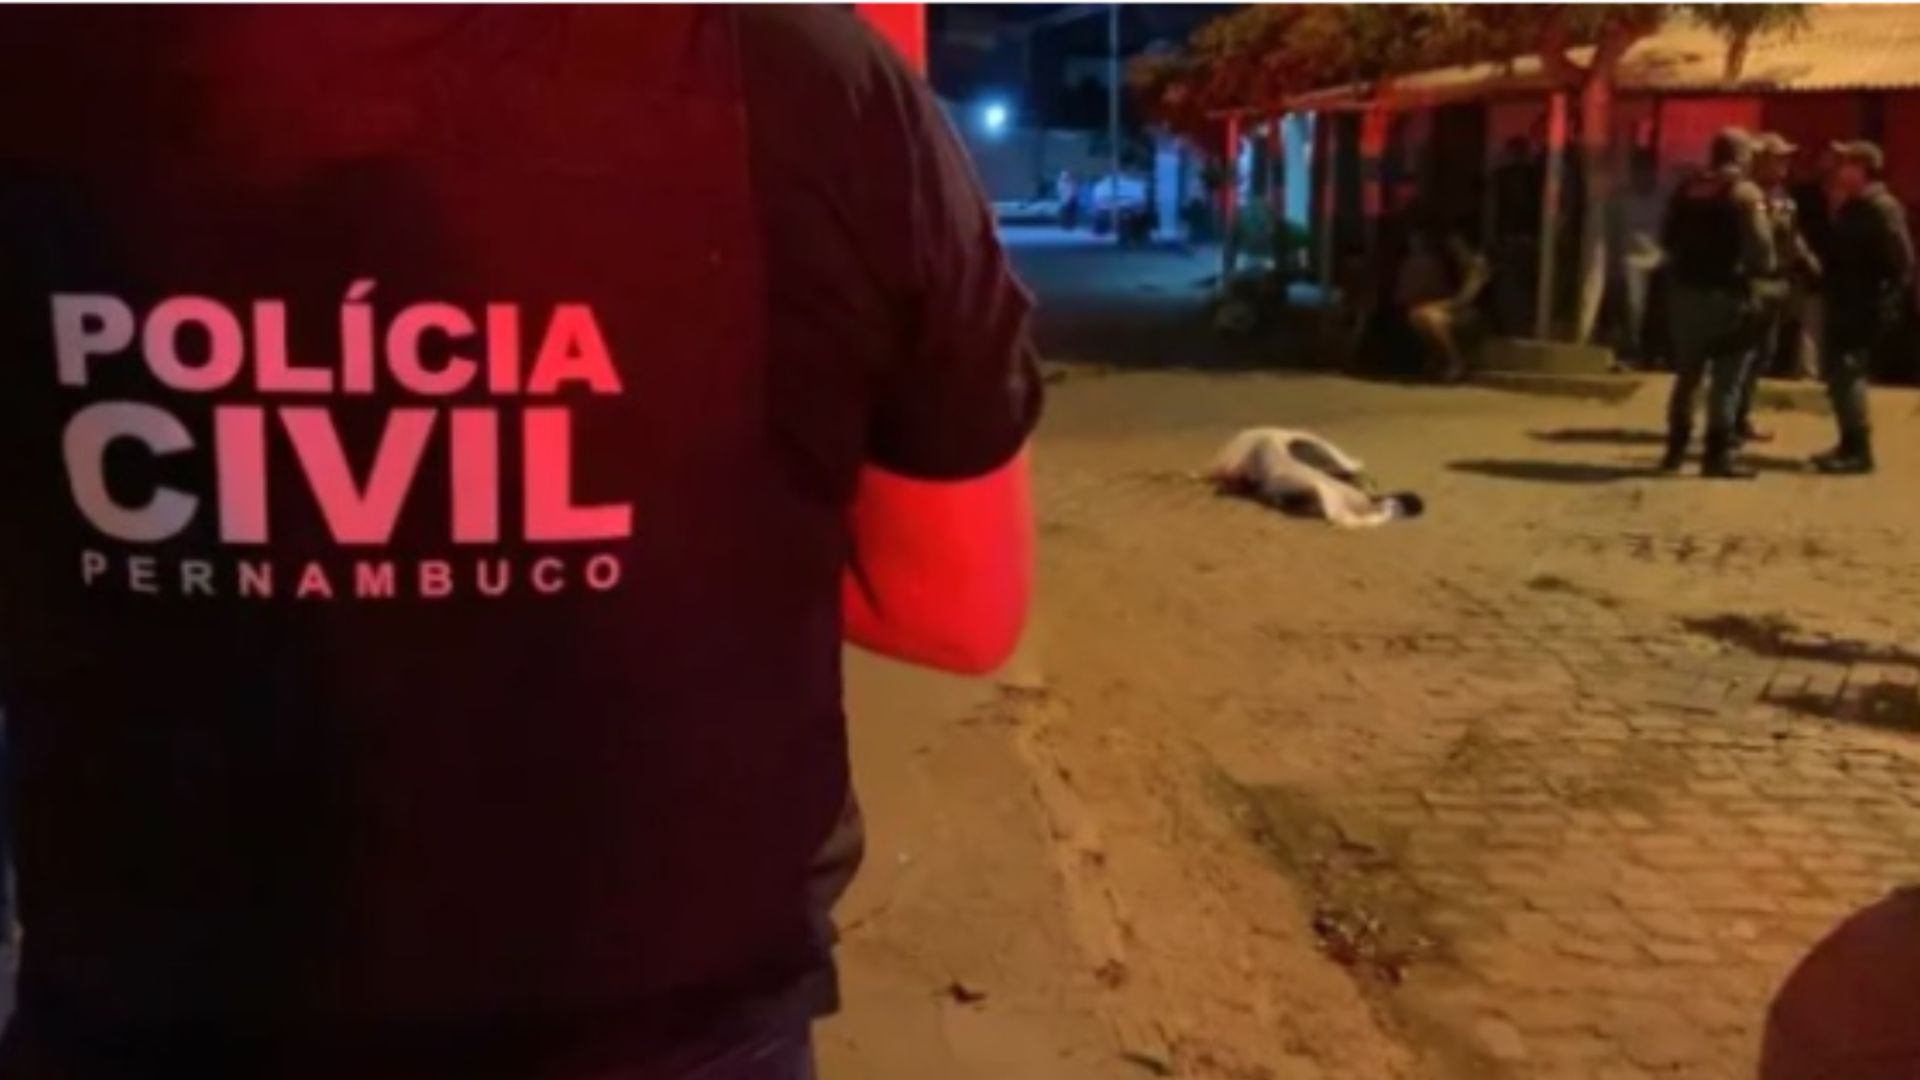 Violência em Pernambuco eleva o número de assassinatos.